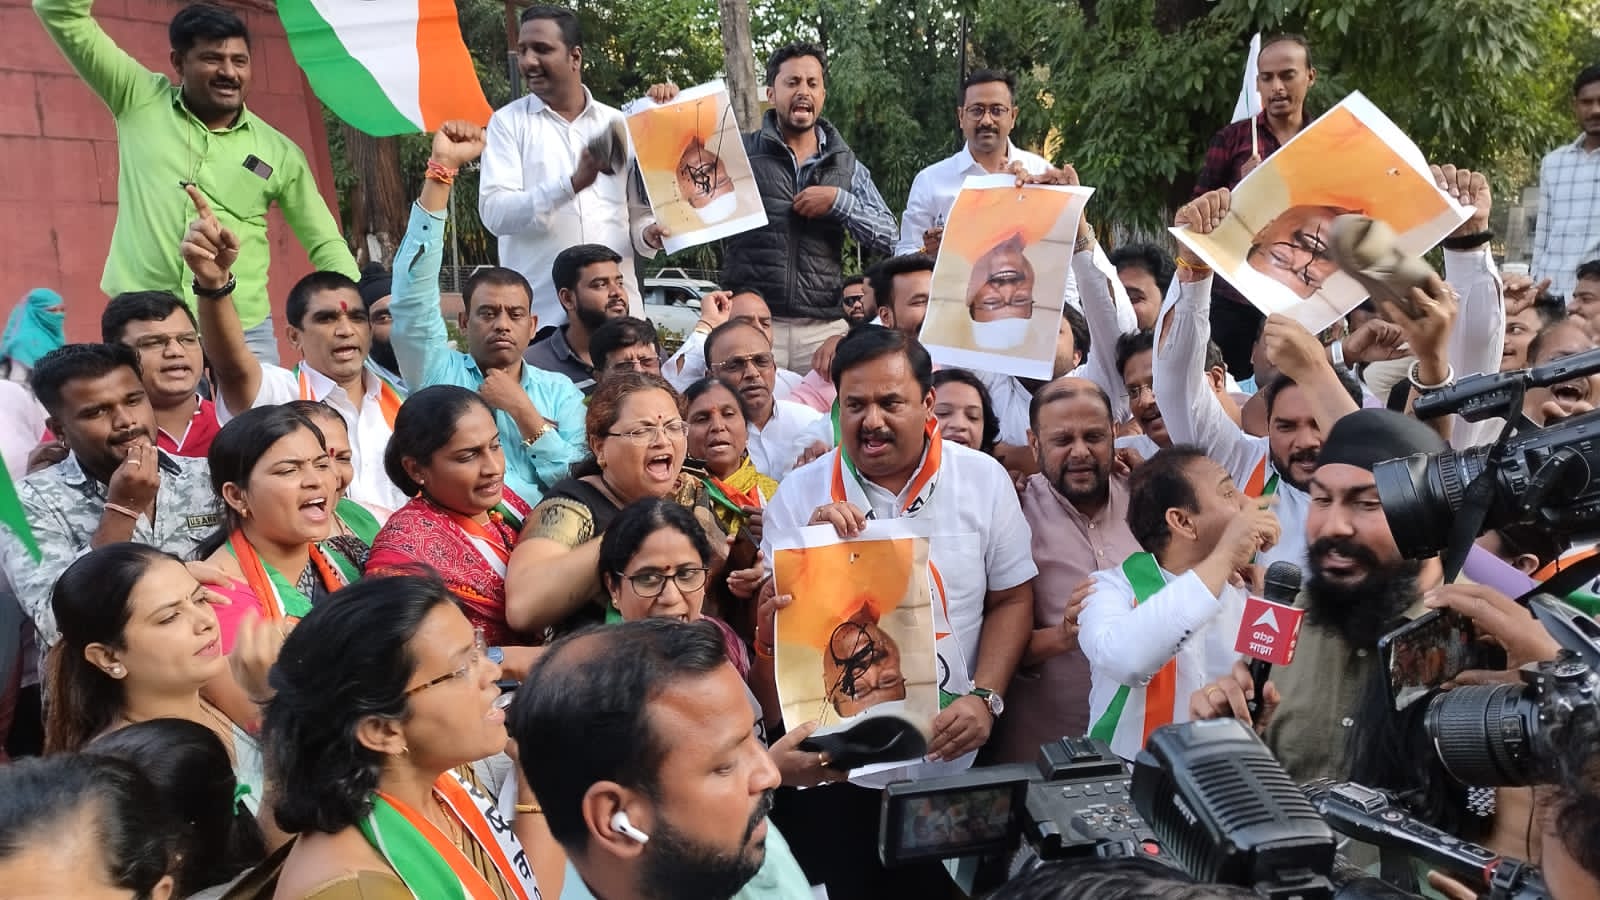 Abdul Sattar Vs NCP | Pune | अब्दुल सत्तार यांच्या विरोधात पुणे शहर राष्ट्रवादी काँग्रेस पार्टीचे “जोडे मारो आंदोलन”